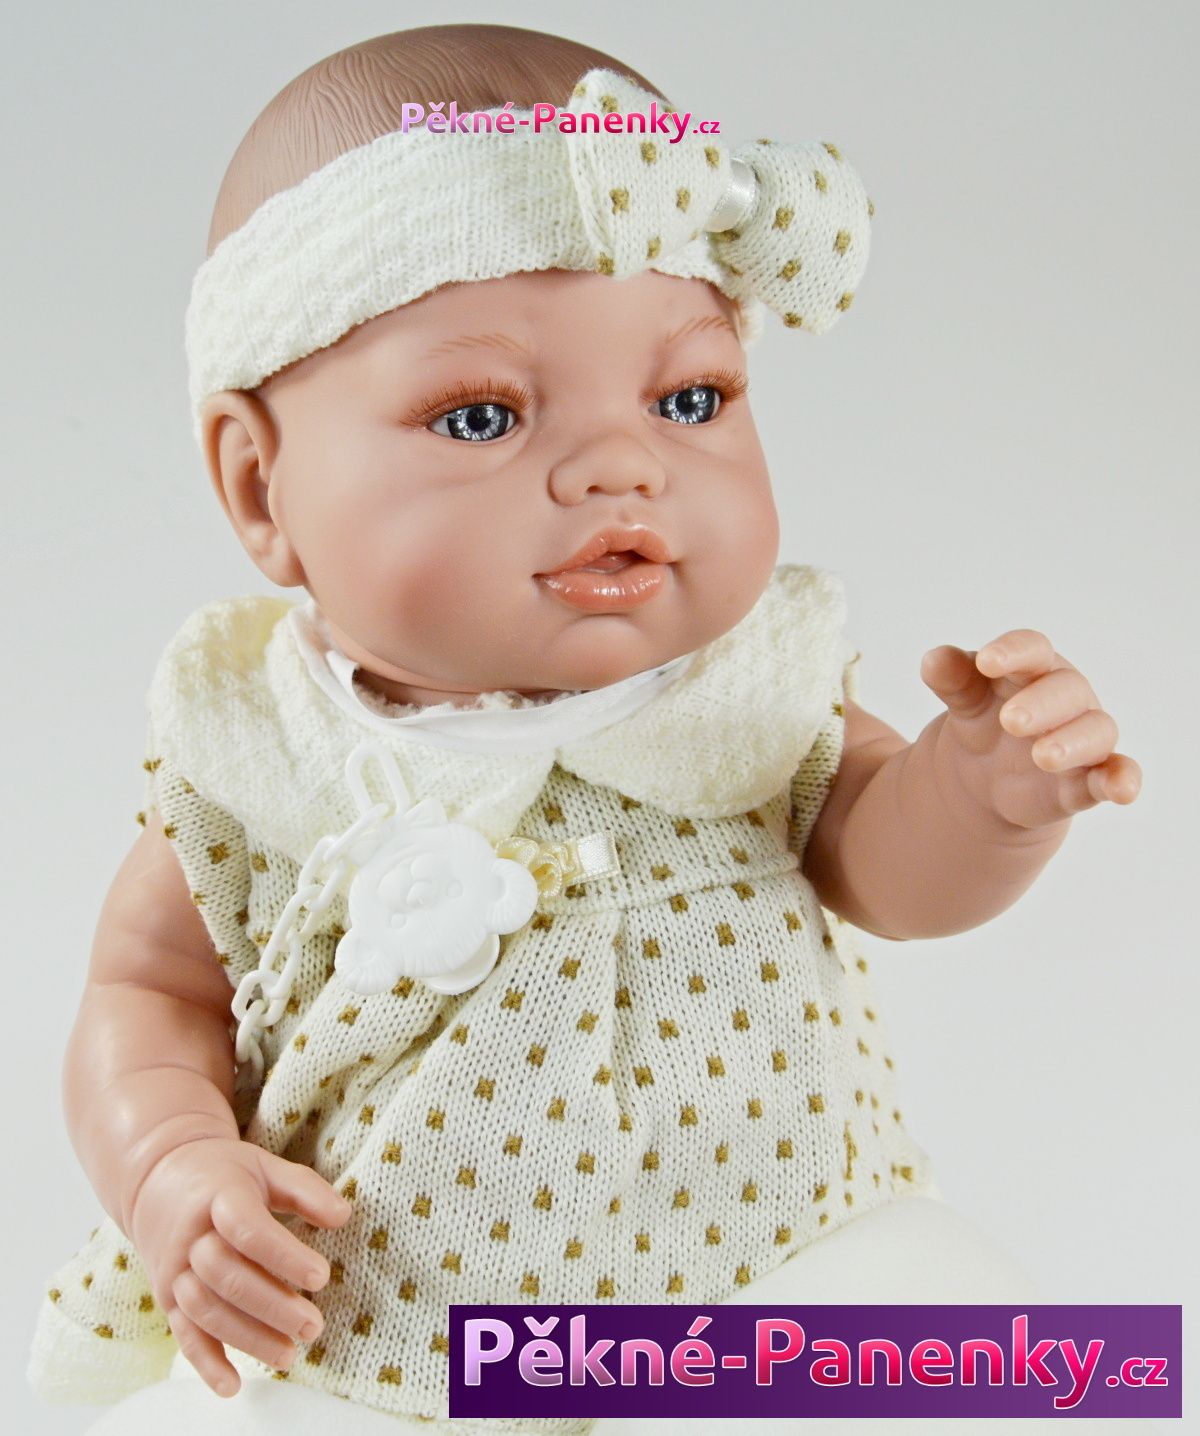 originalní španělské panenky pro děti realistická španělská panenka miminko jako živé miminko, panenky jako živé Berbesa mluvící panenky ze Španělska pro děti